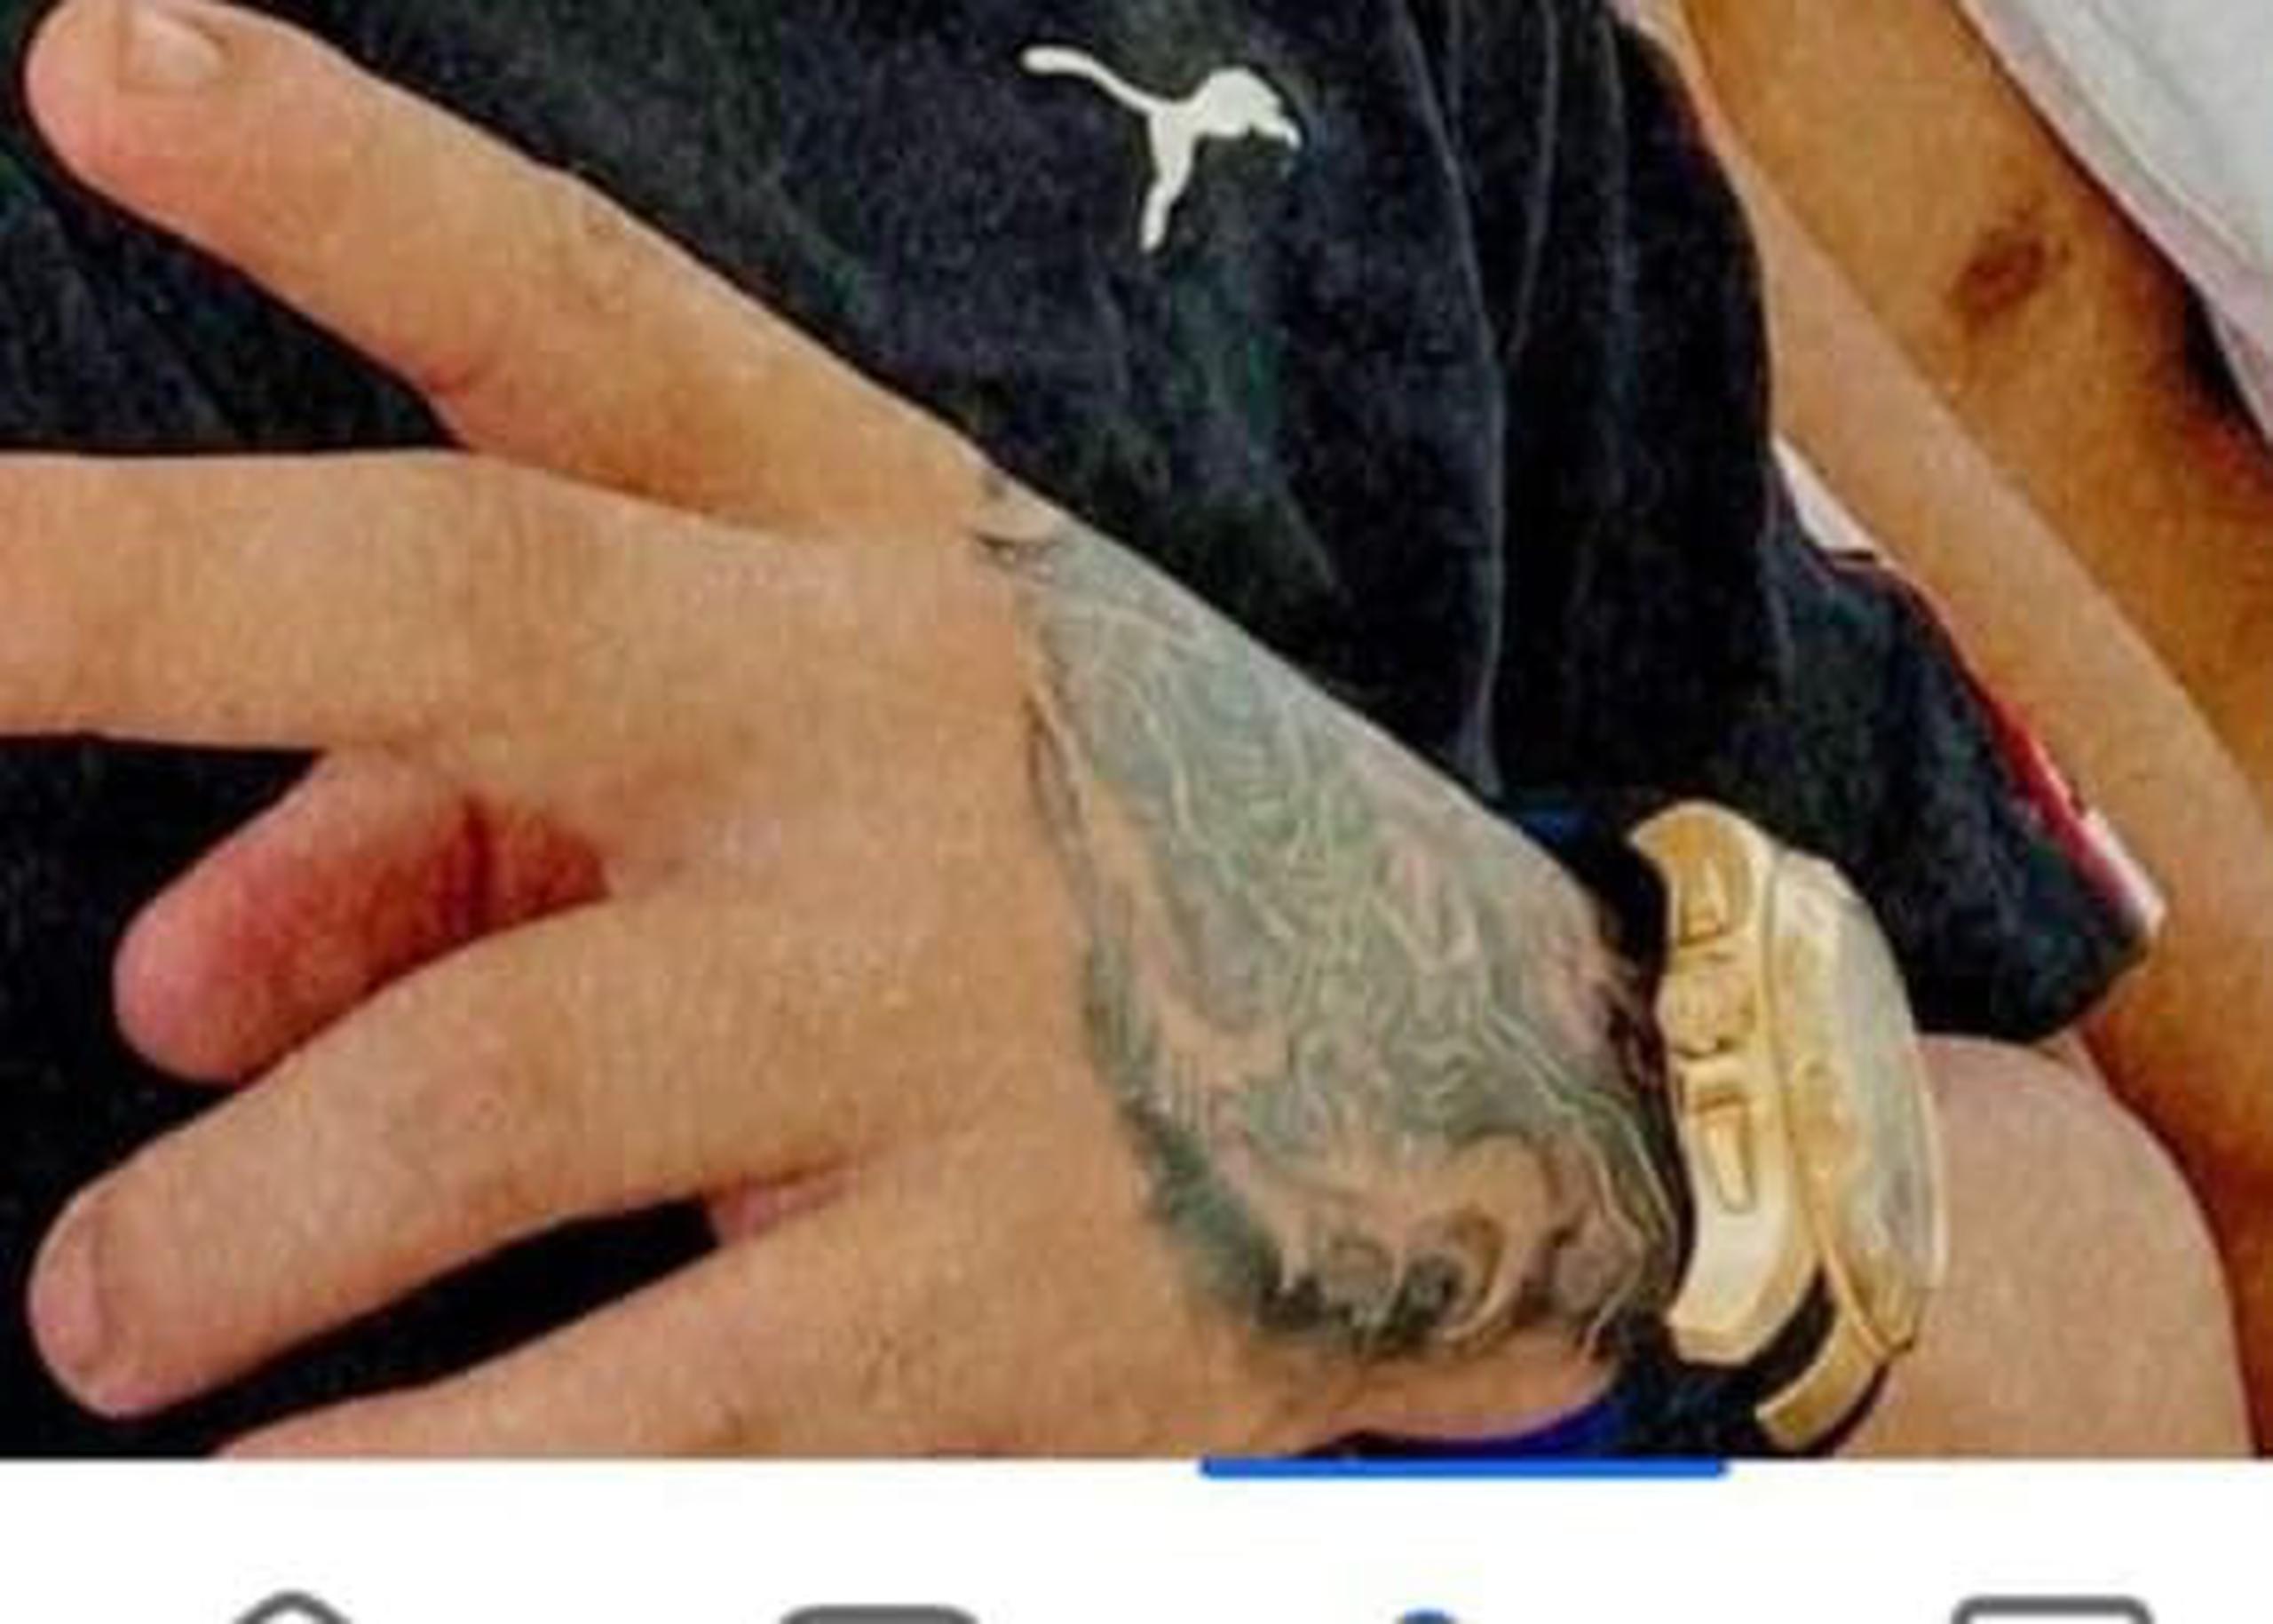 Detalle del tatuaje de Jenniel Alexander Rodríguez García, de 18 años, en la mano izquierda, quien está acusado en ausencia por el asesinato de una pareja de adultos mayores en el barrio Húcares en Naguabo.